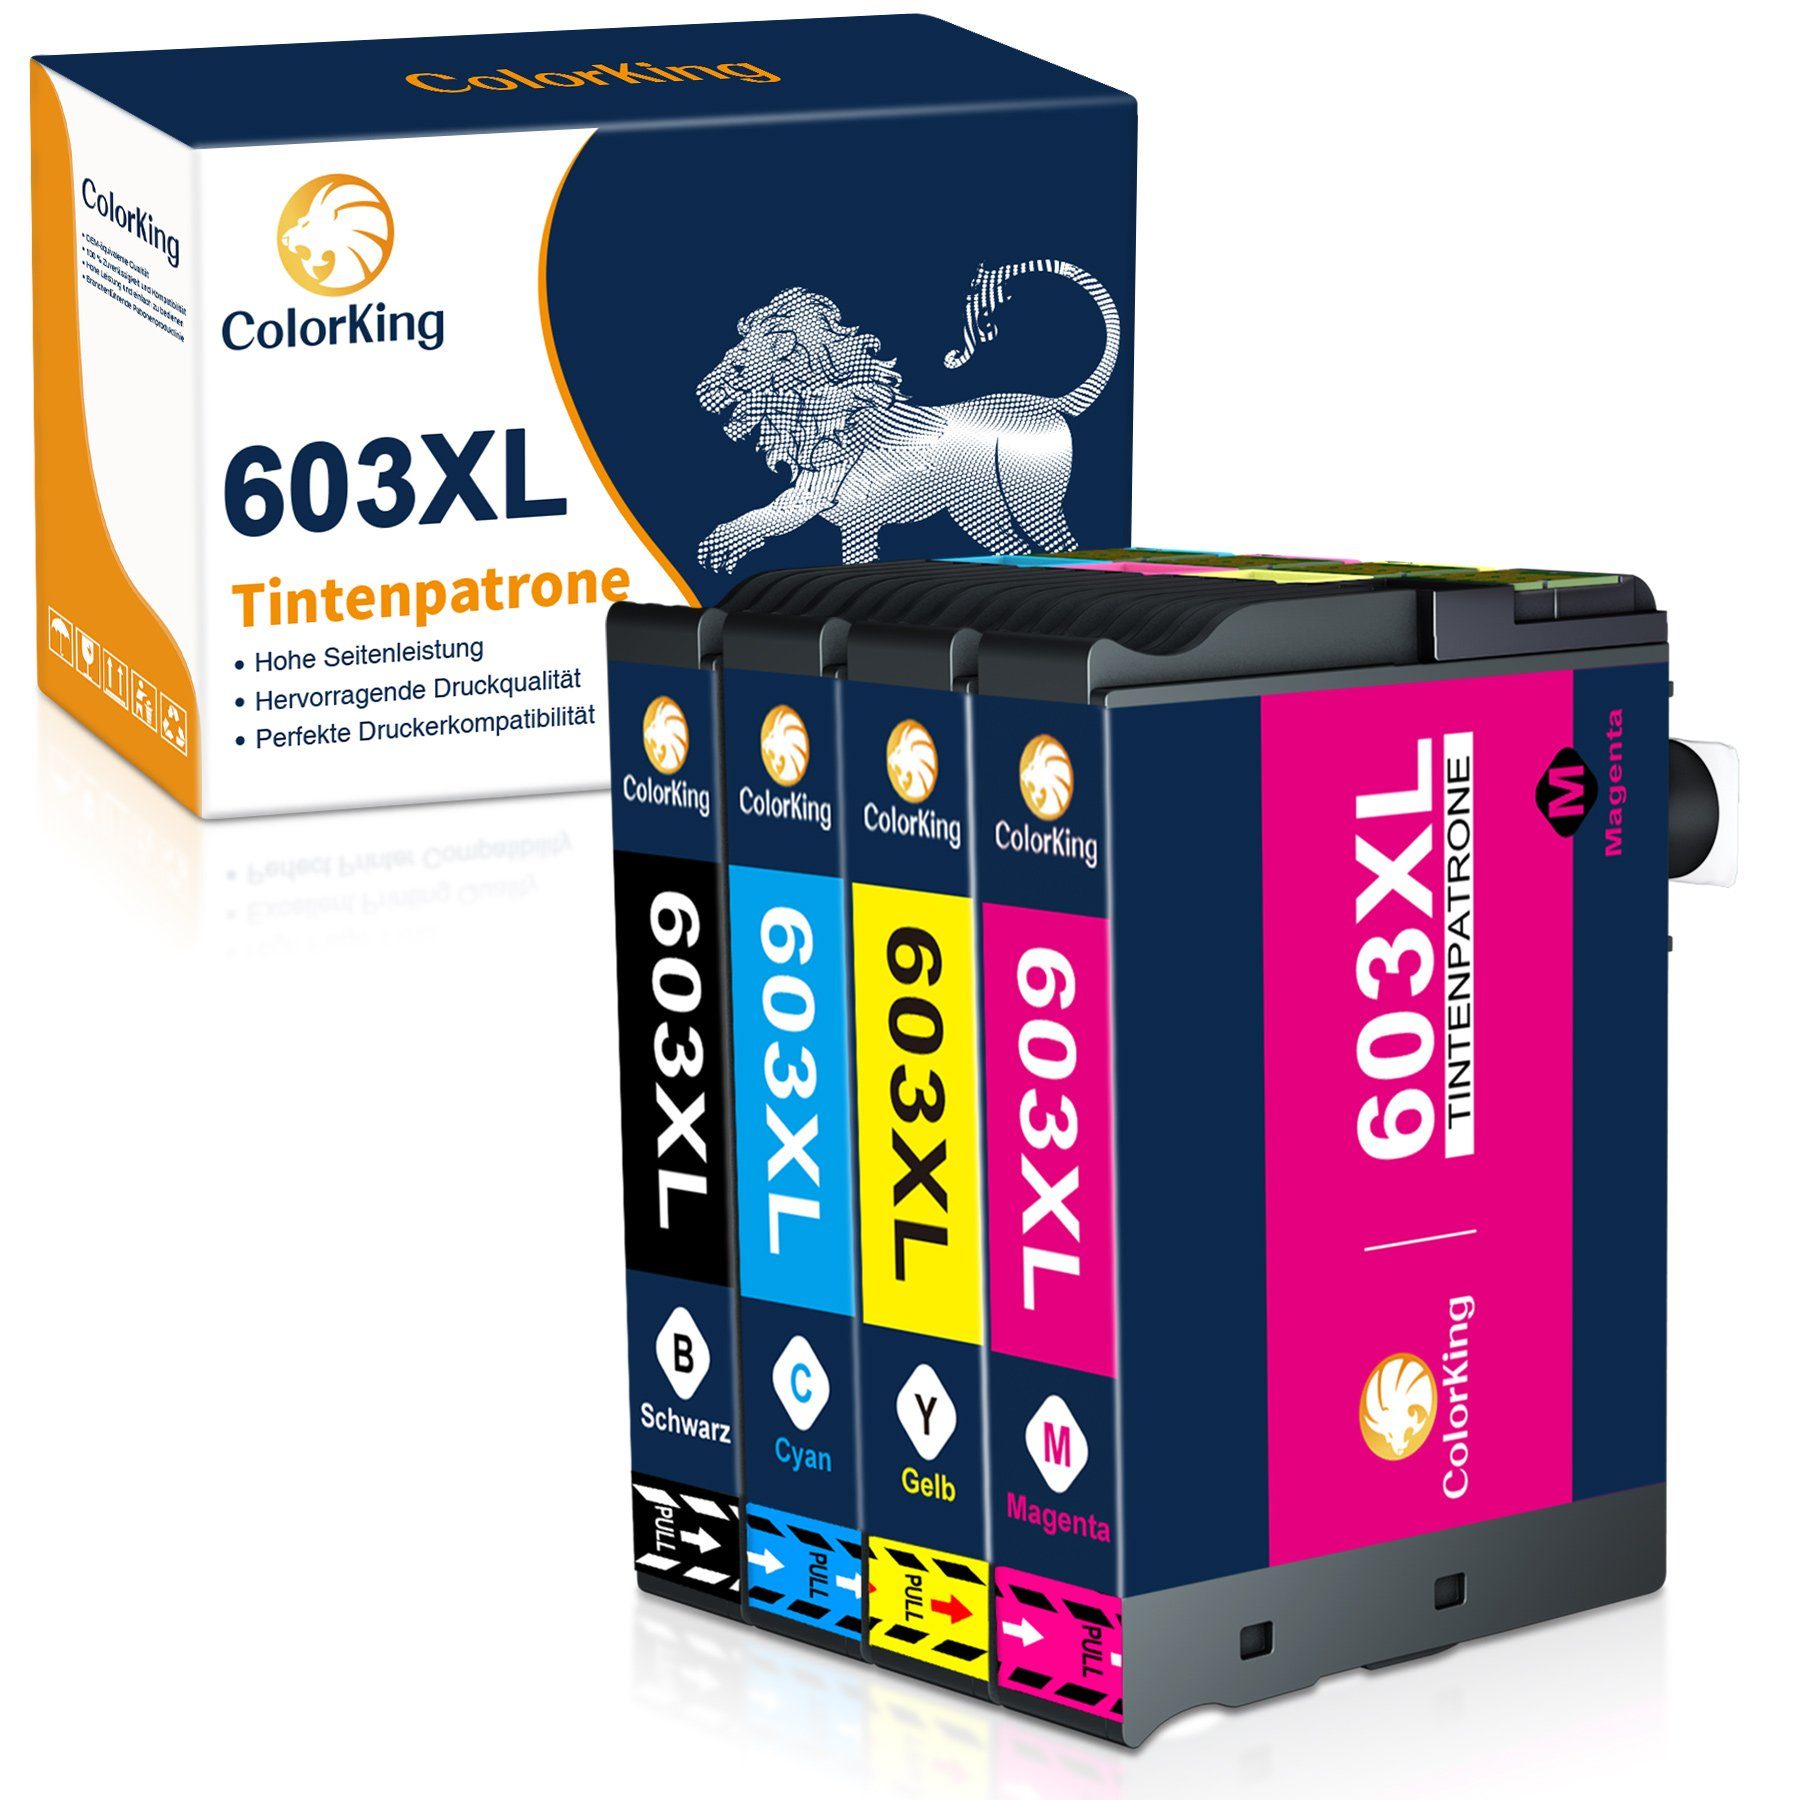 XP-3100 XL Tintenpatrone XP-2100 (0-tlg) für EPSON ColorKing 603 XP-3105